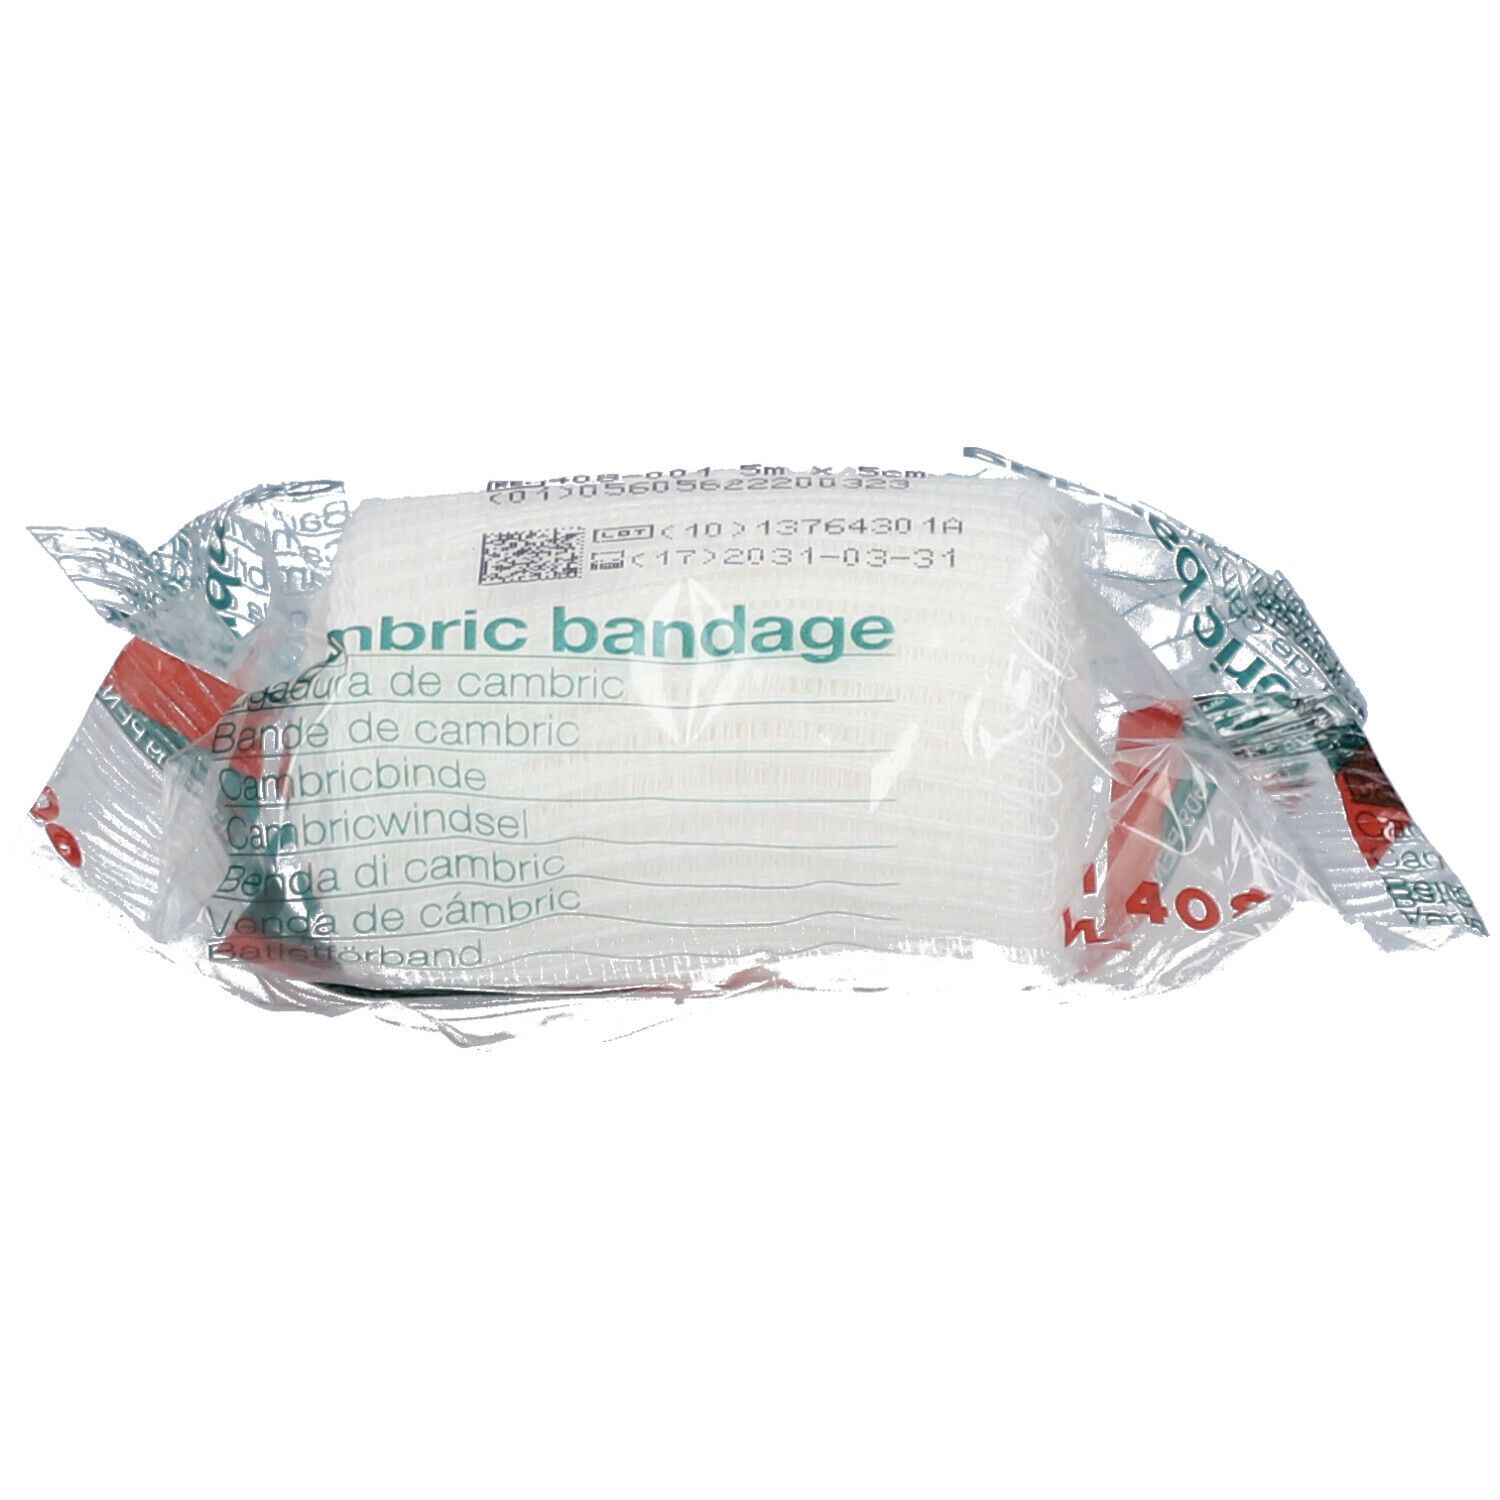 Image of Cambric Bandage 408 5 cm x 5m